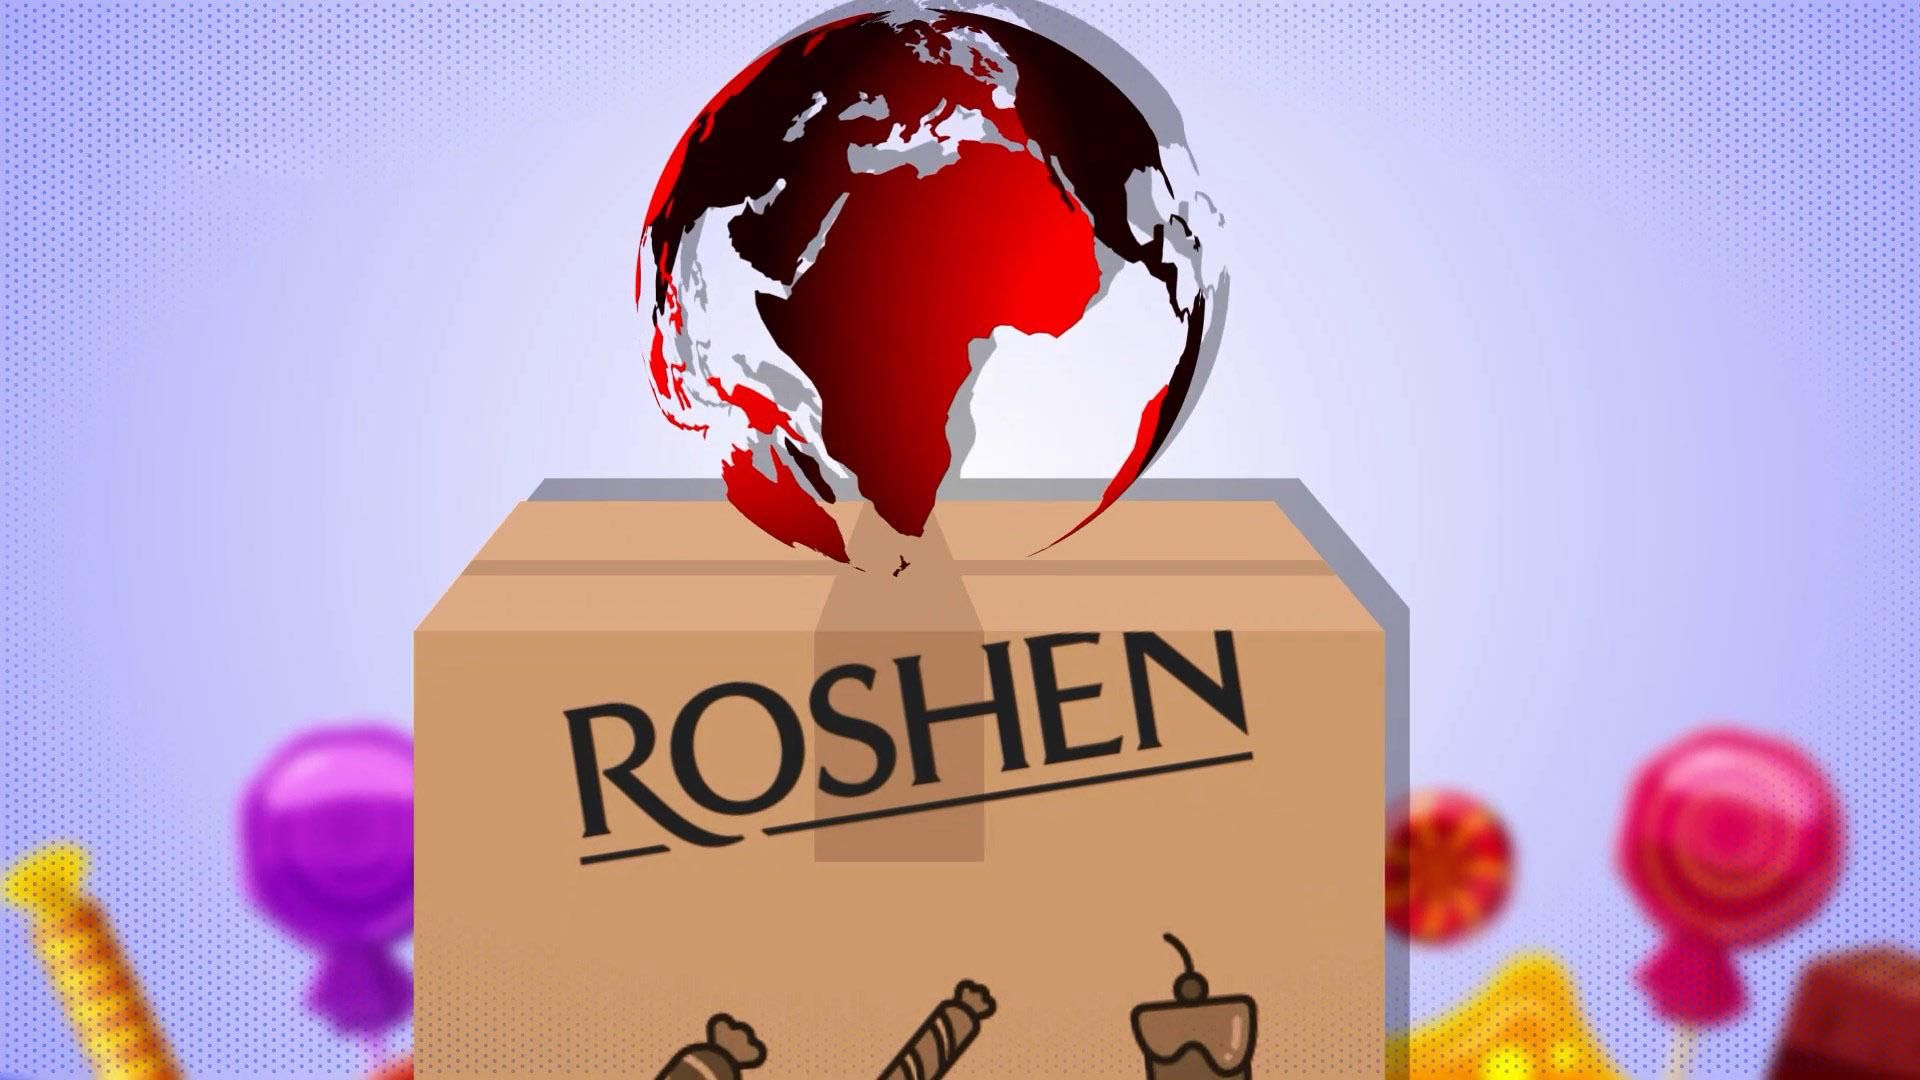 Что скрывается за вывеской "Roshen": детали в цифрах